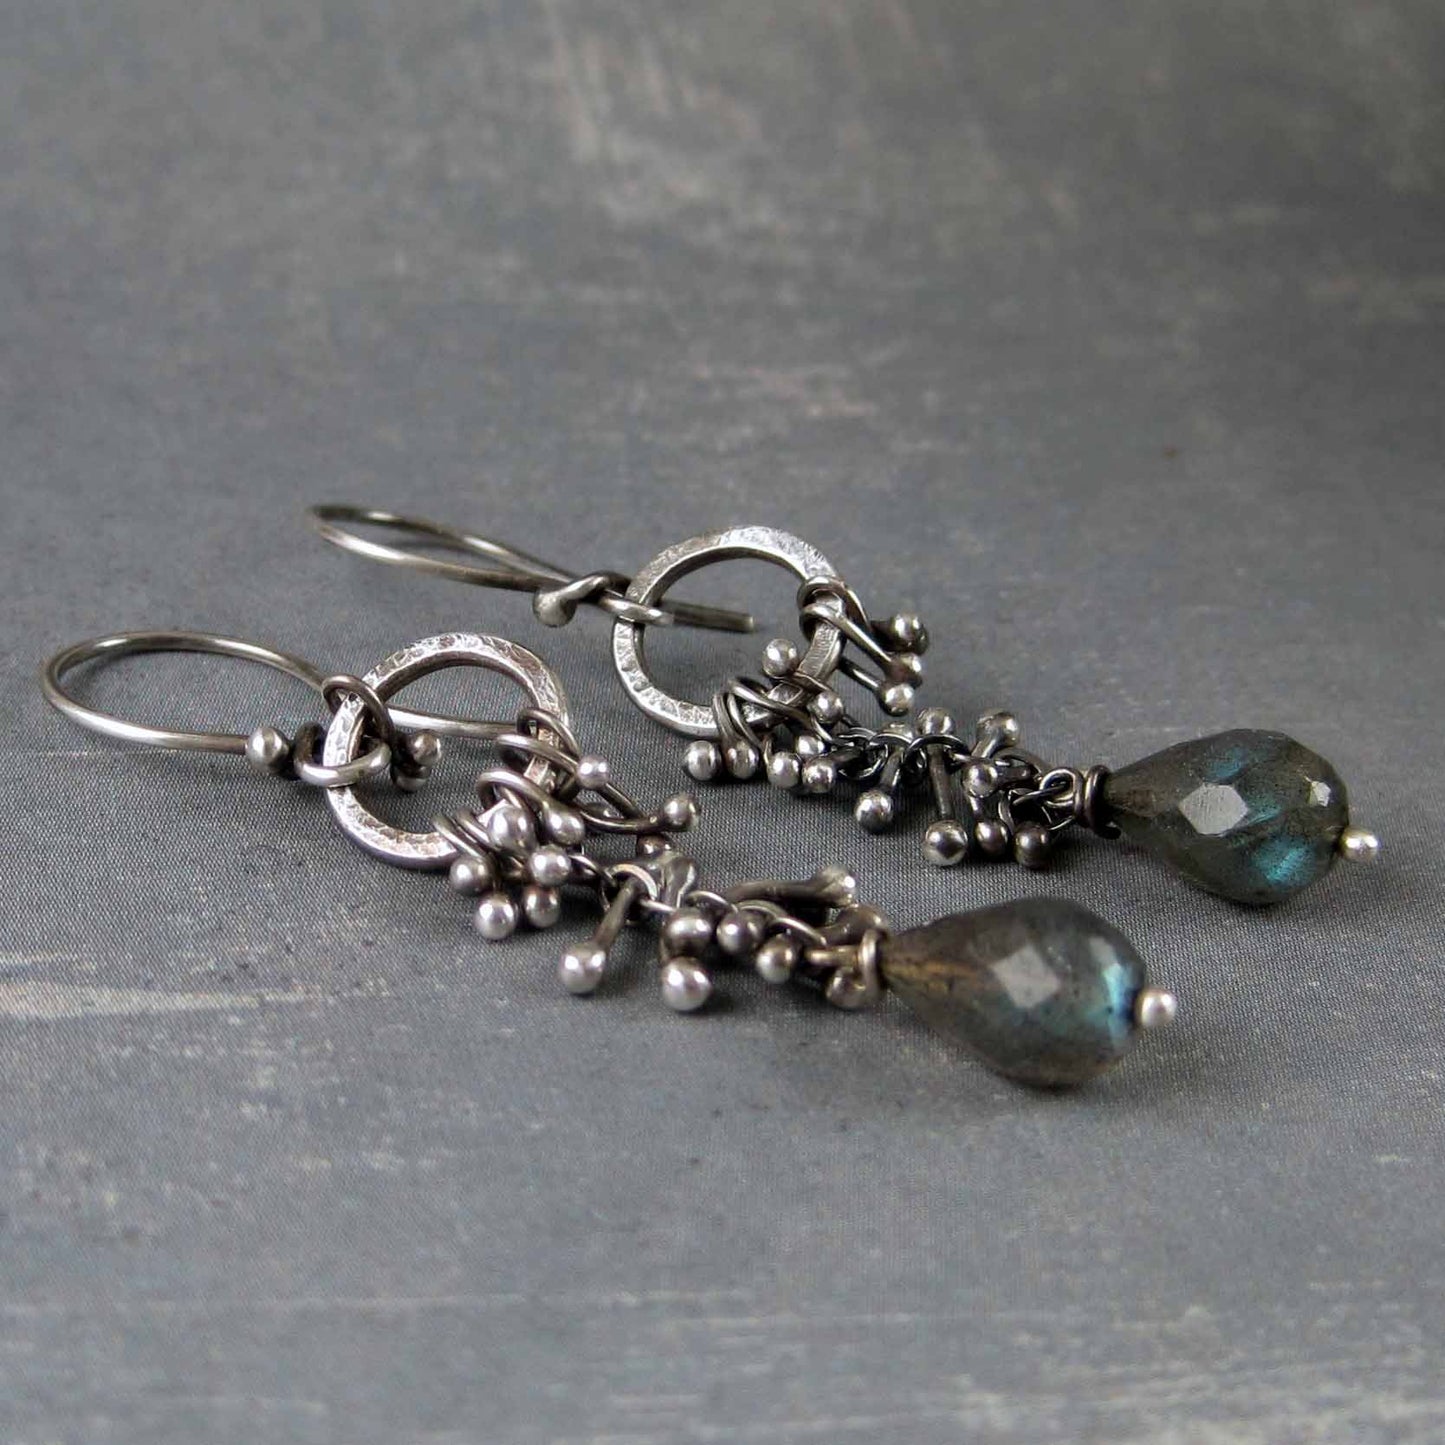 Labrdorite earrings - artisan made rustic sterling silver earrings